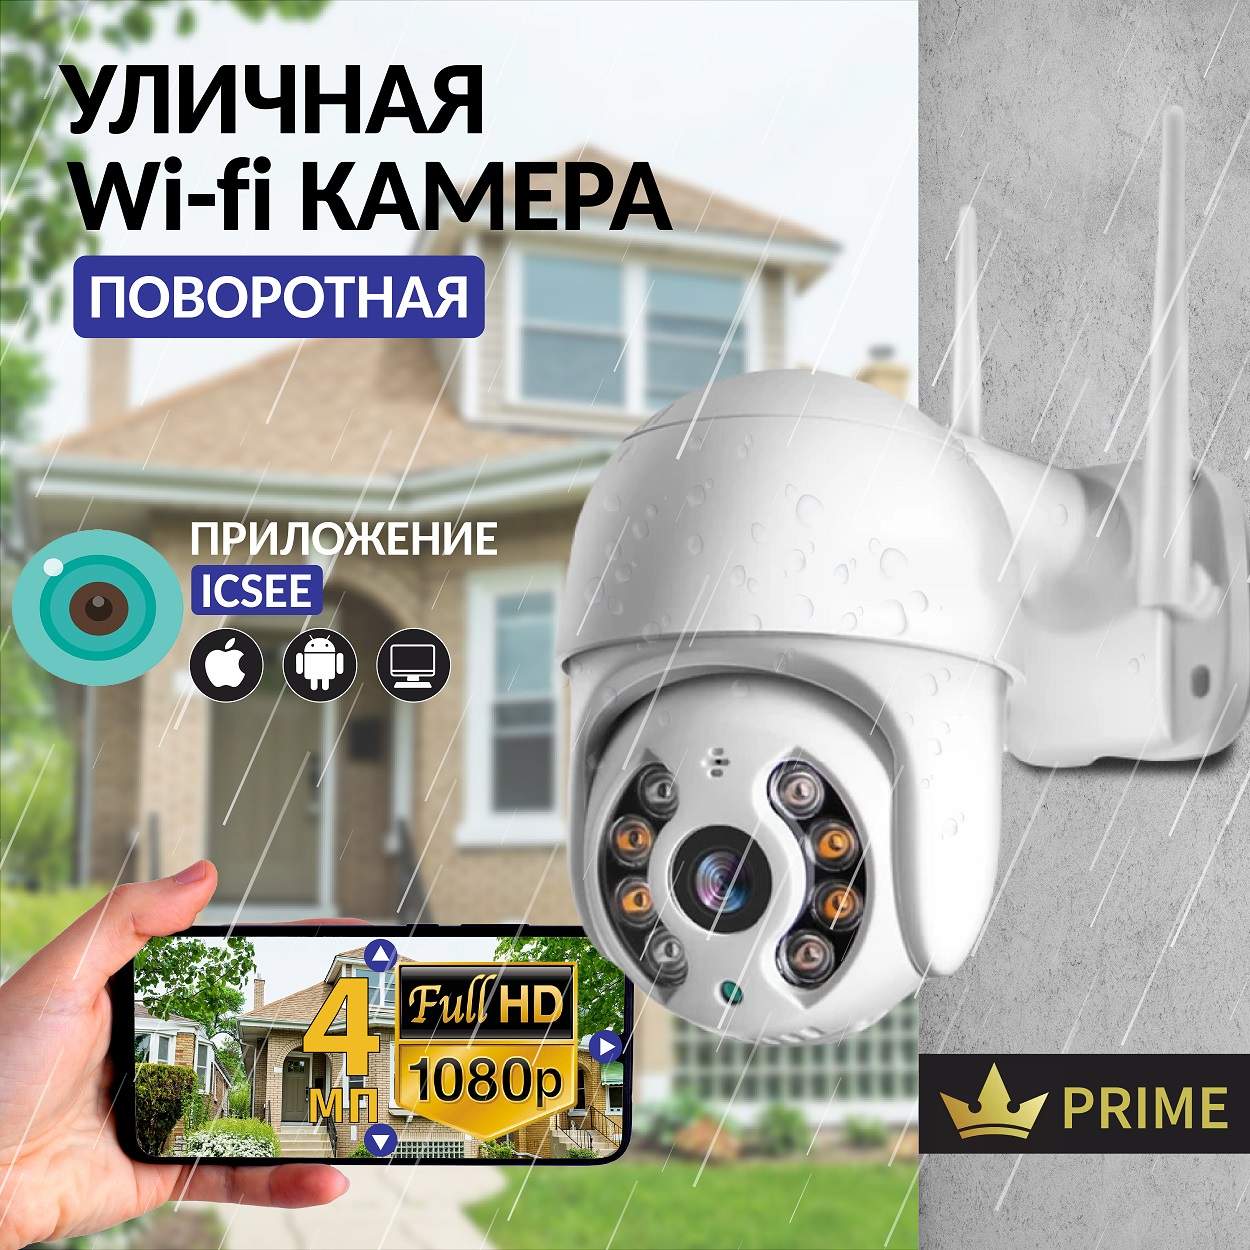 Камера видеонаблюдения IP VG-1360 Wifi уличная поворотная 4 Мп, VVG6986328 камера видеонаблюдения safeburg eye 518 домашняя и уличная камера wi fi